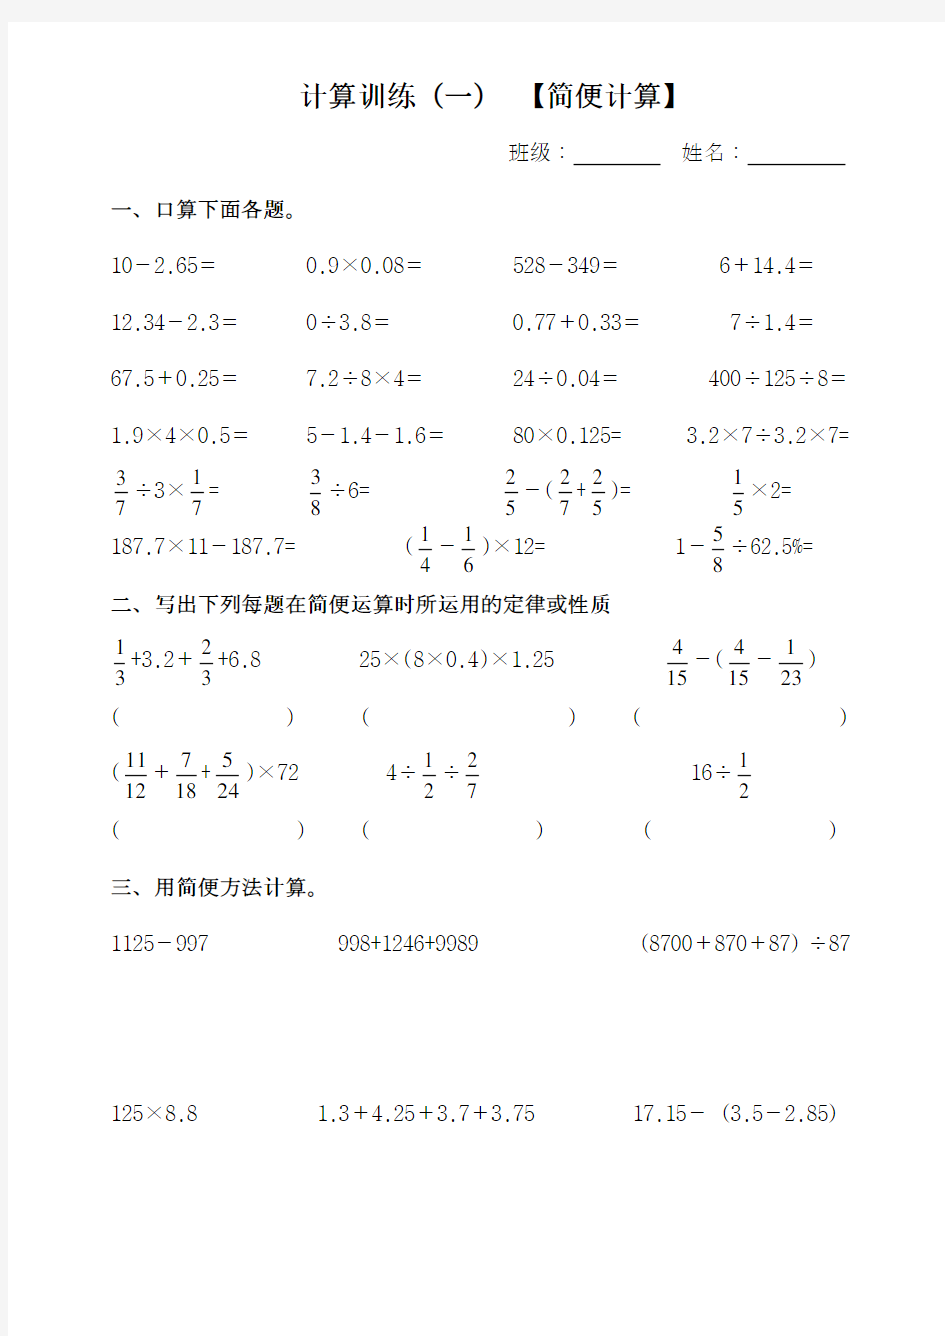 (完整版)人教版数学六年级下册简便计算题1-